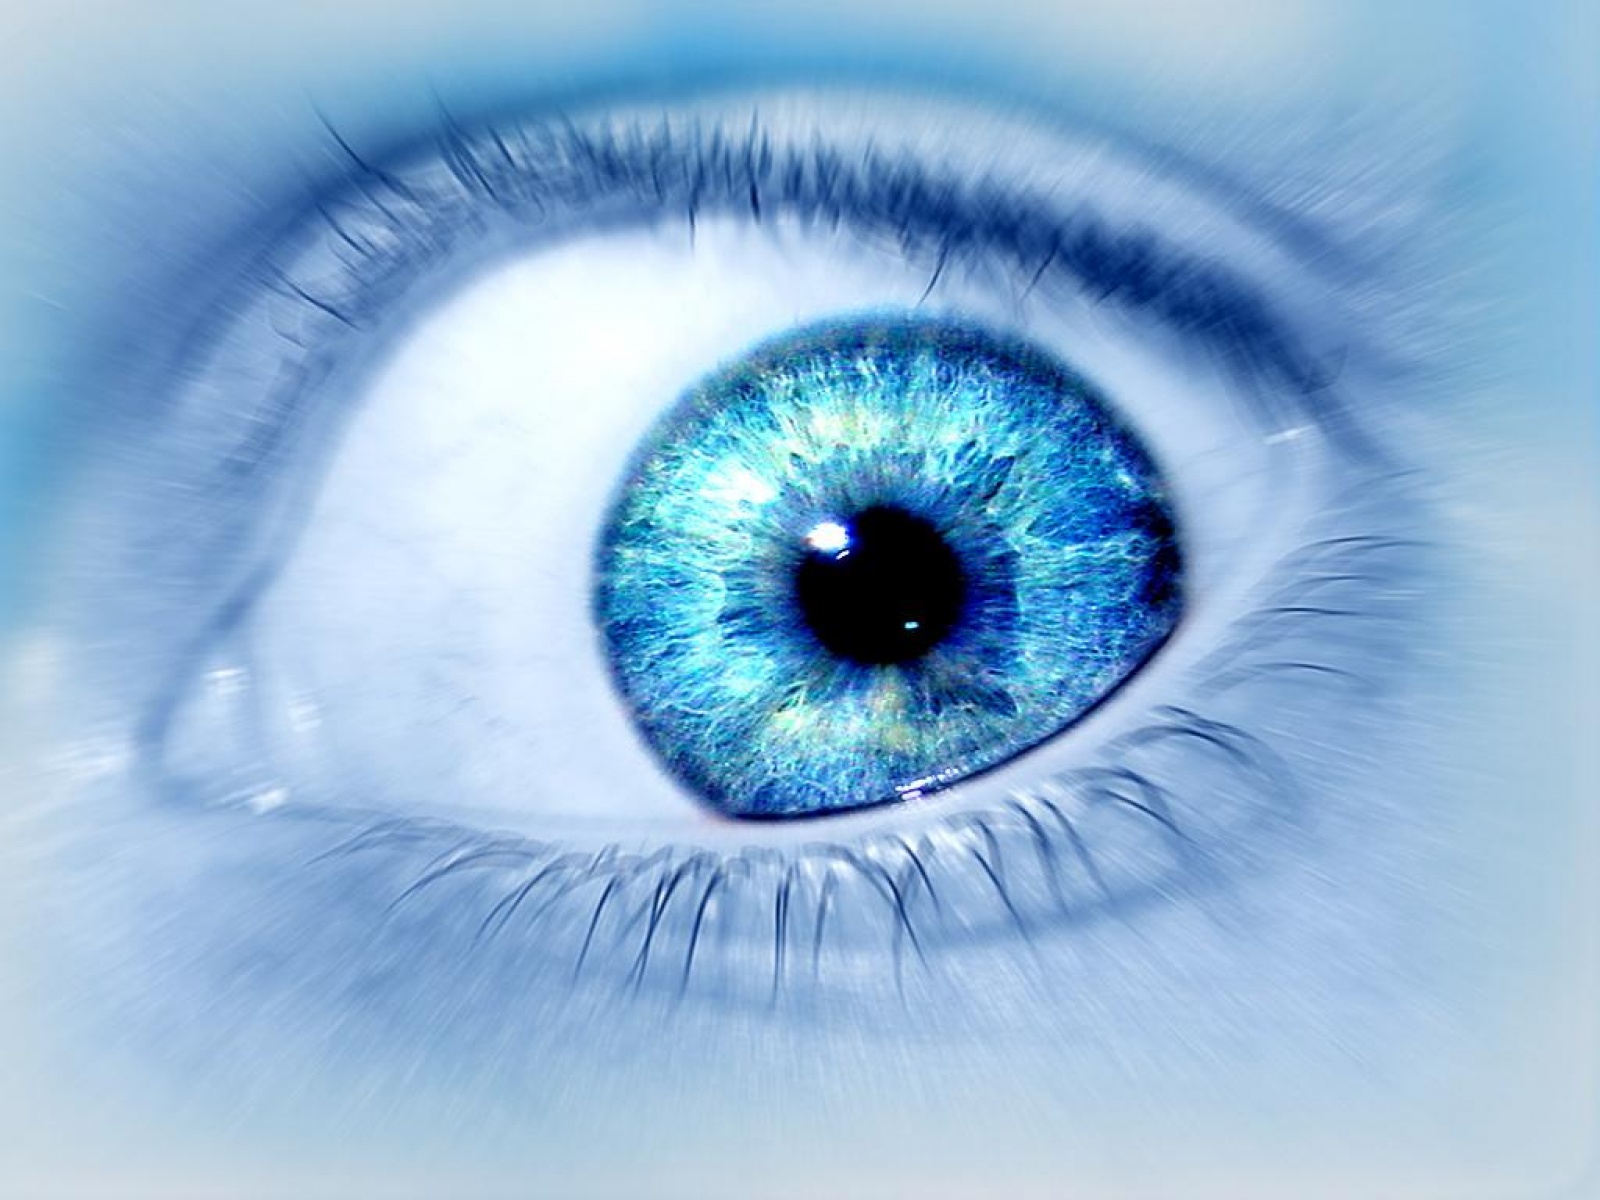 eyes wallpaper download,eye,blue,iris,close up,eyelash